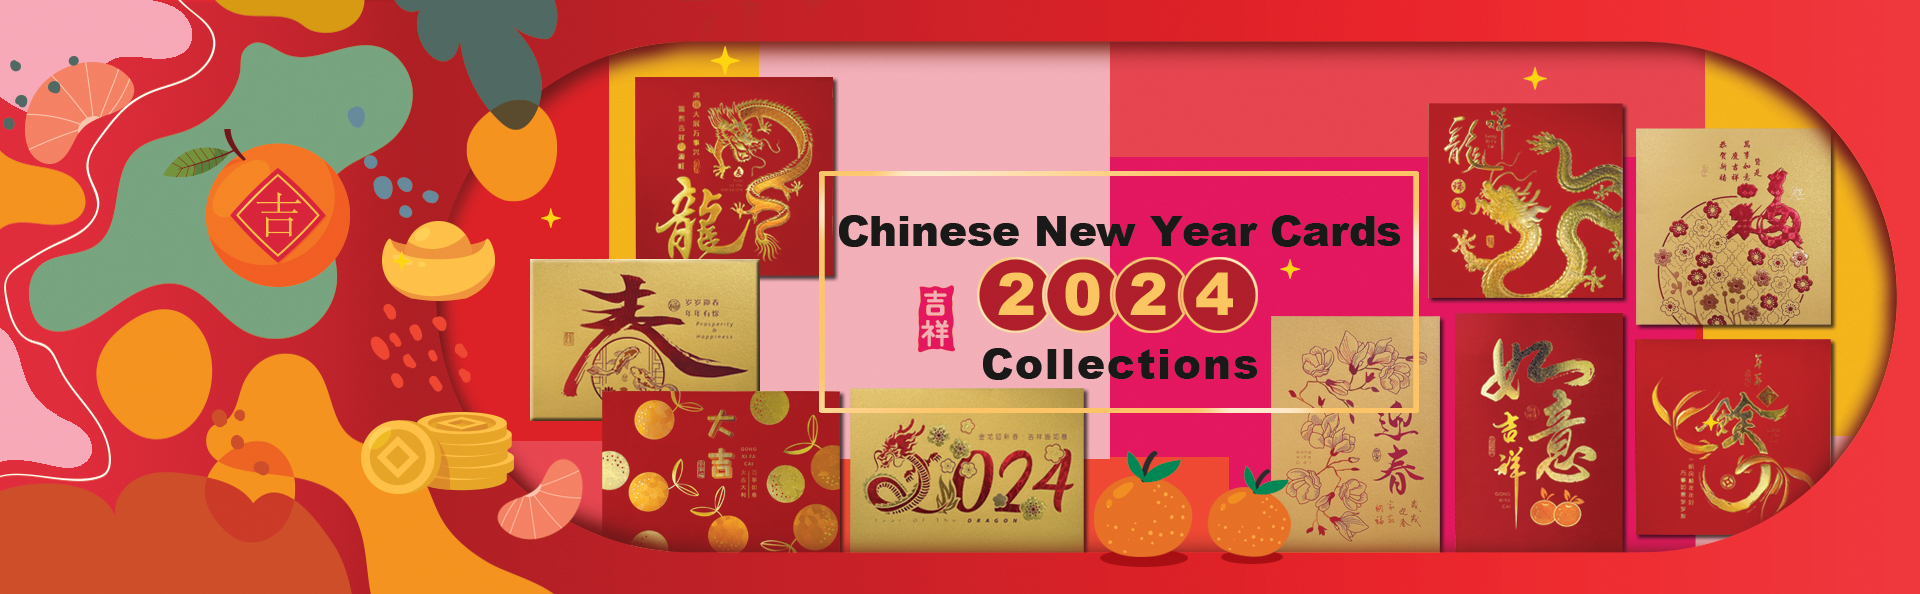 2024 website cover cny card